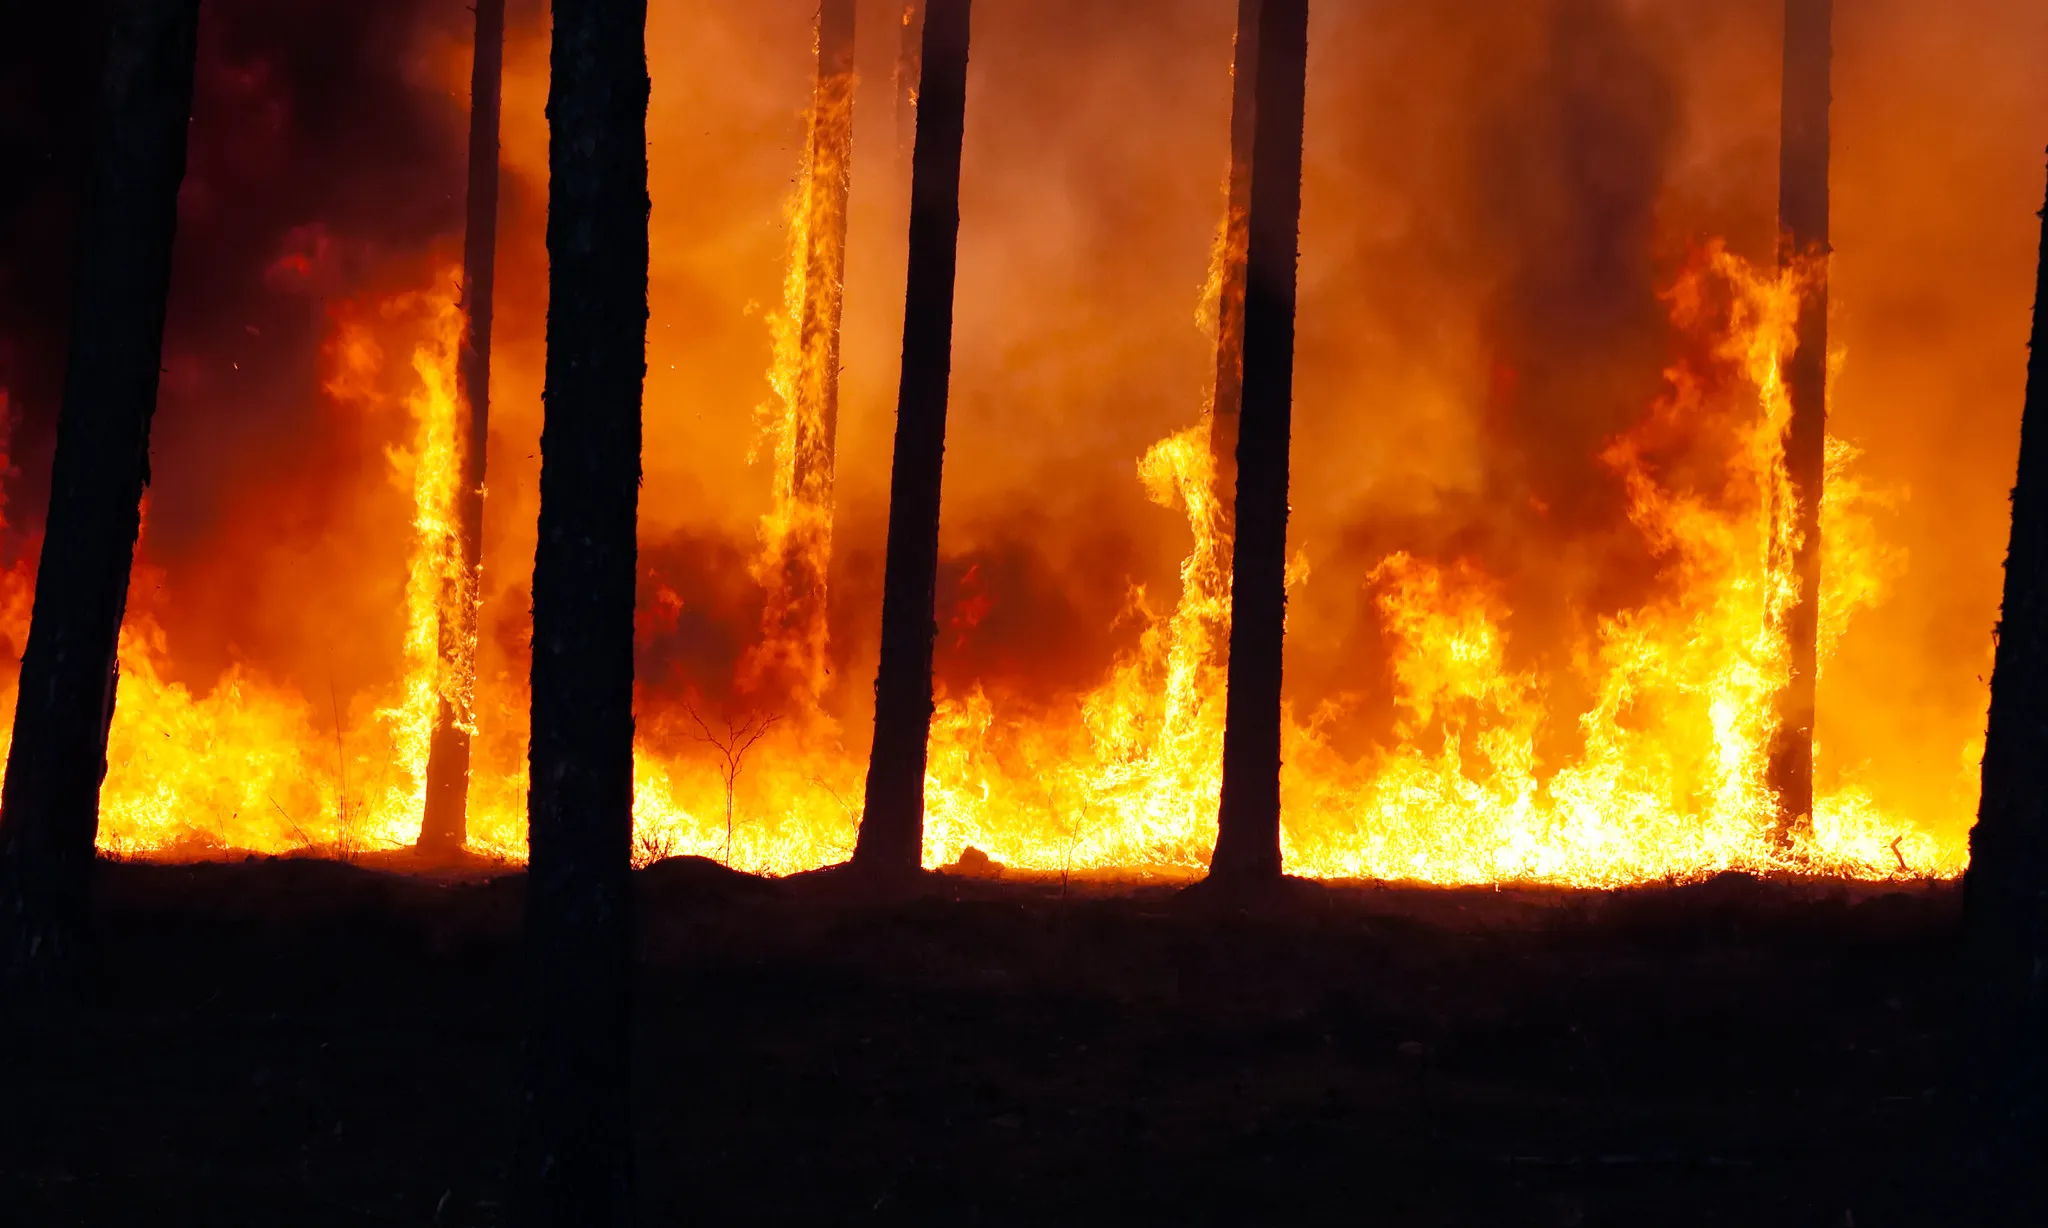 Els incendis forestals a Grècia, Turquia i Catalunya són algunes de les conseqüències visibles de l'emergència climàtica.